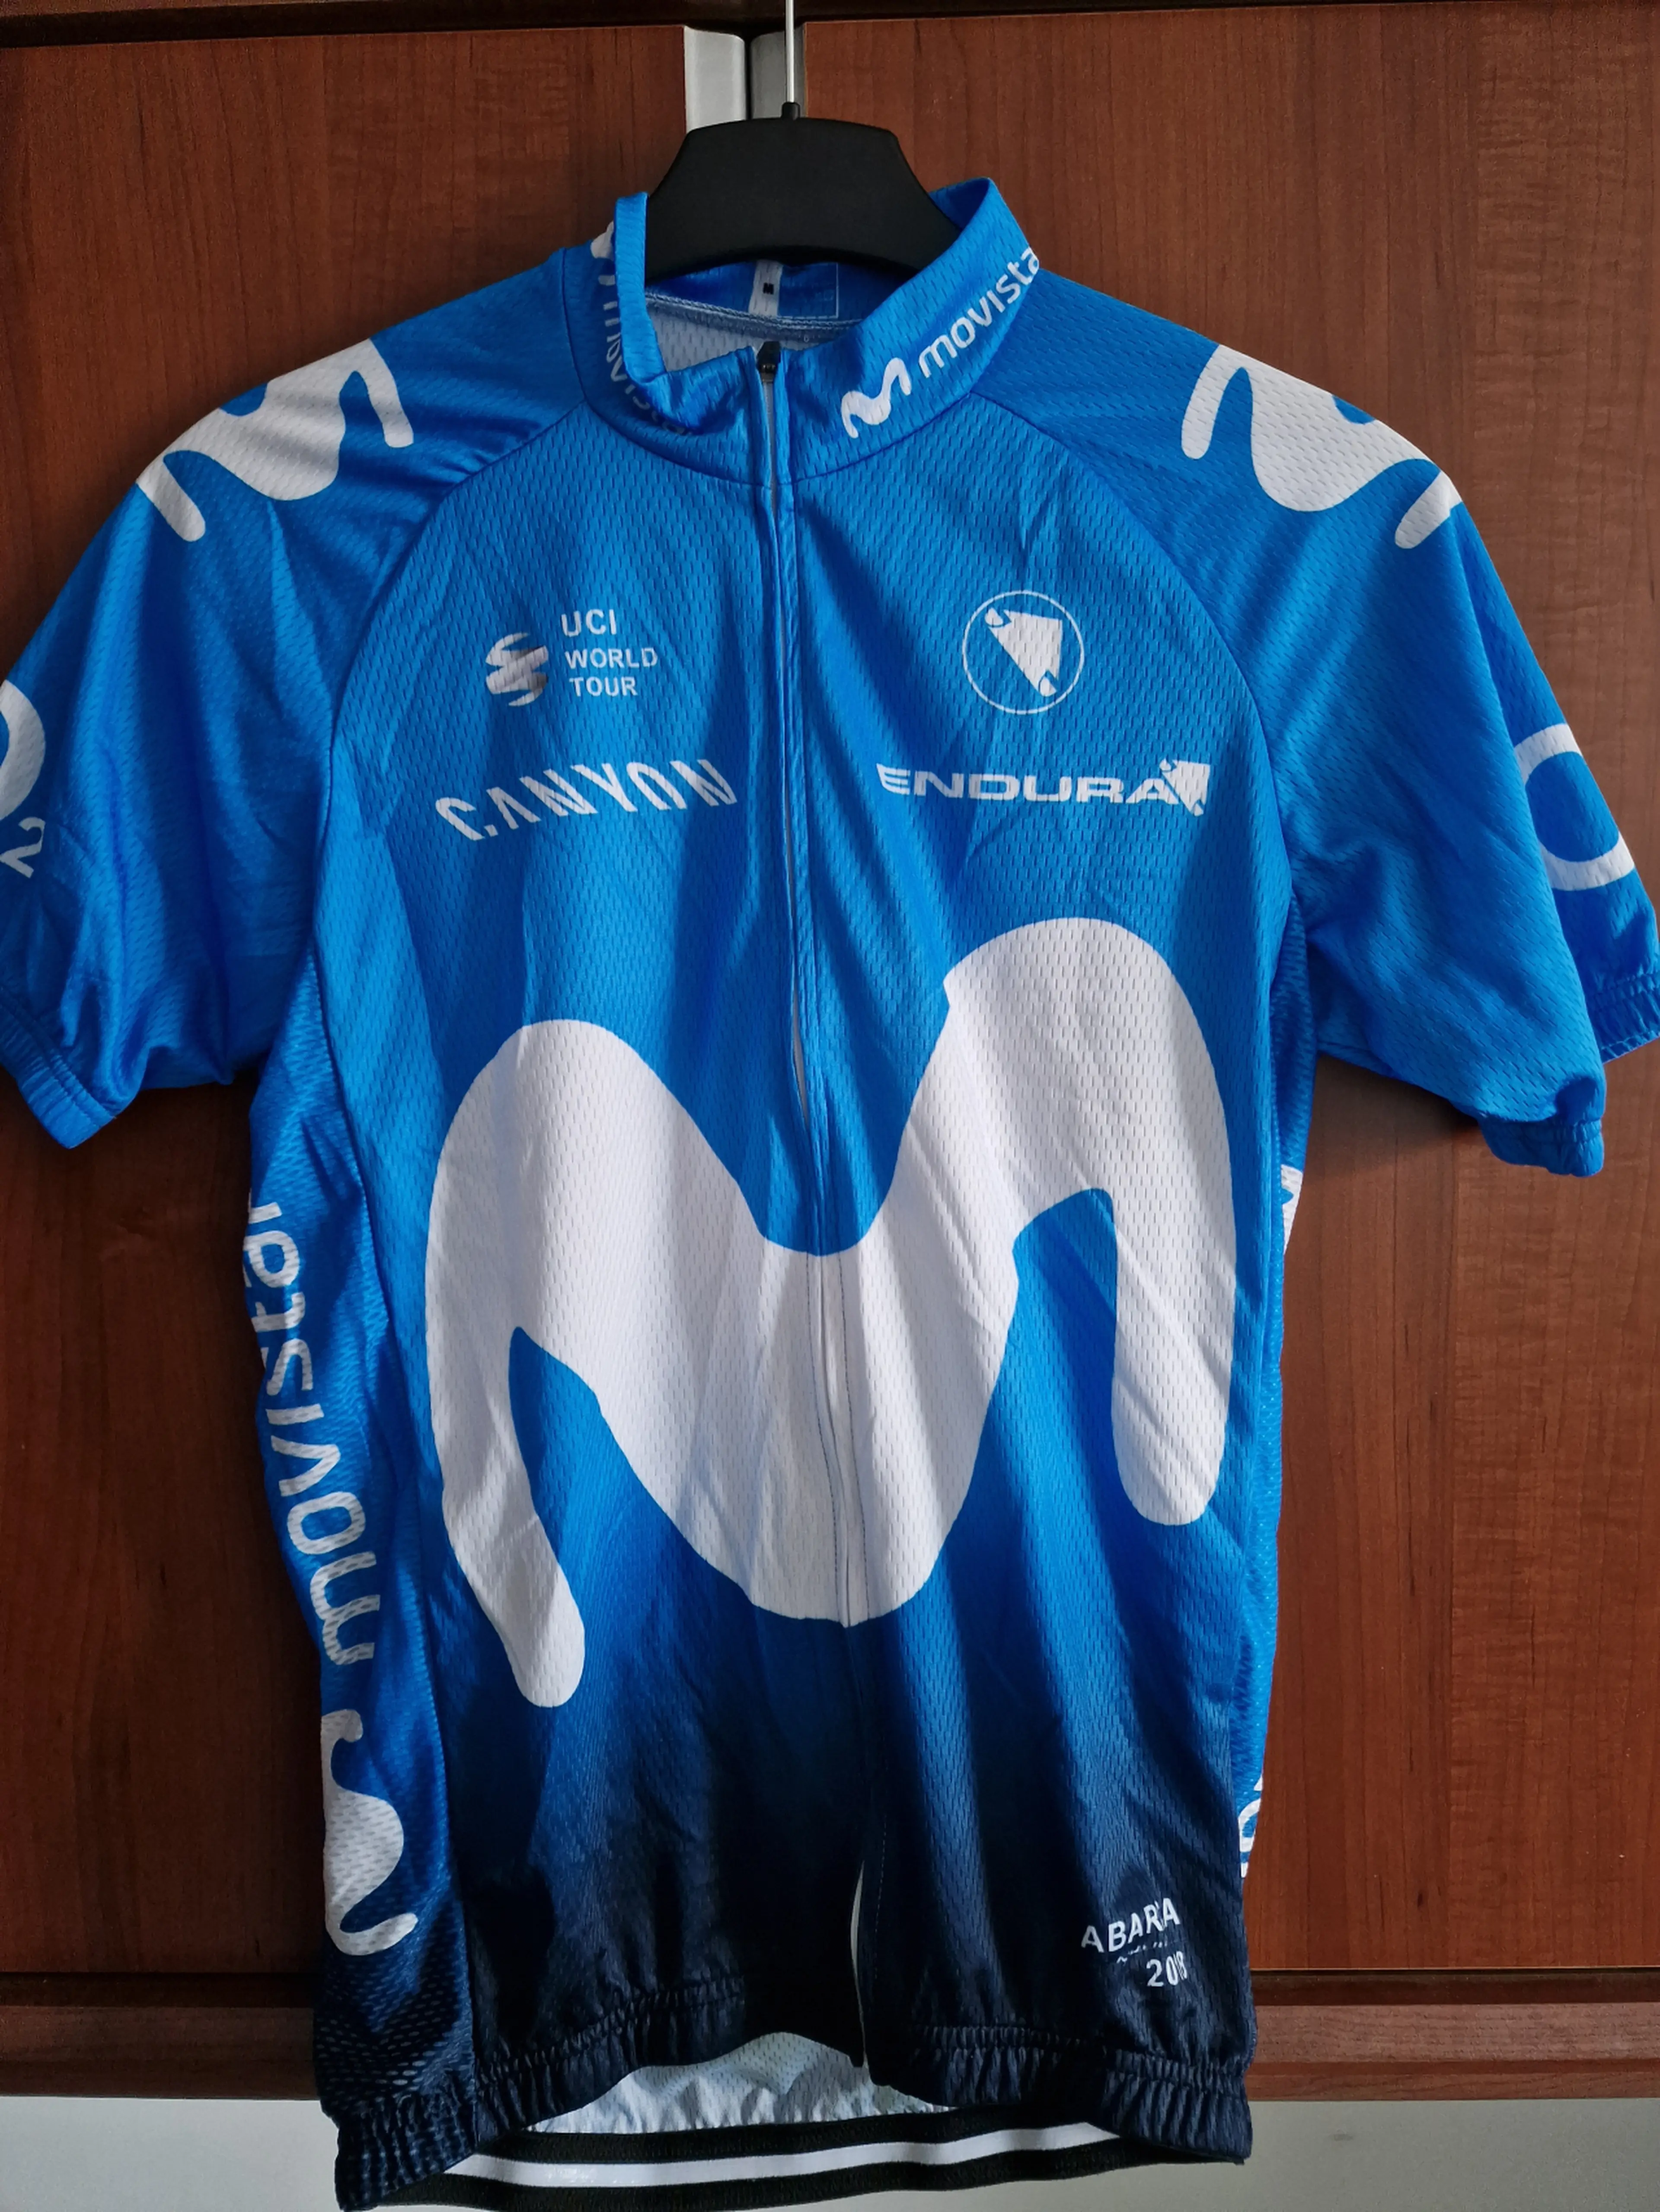 1. Tricou / jersey ciclism replica Team Movistar